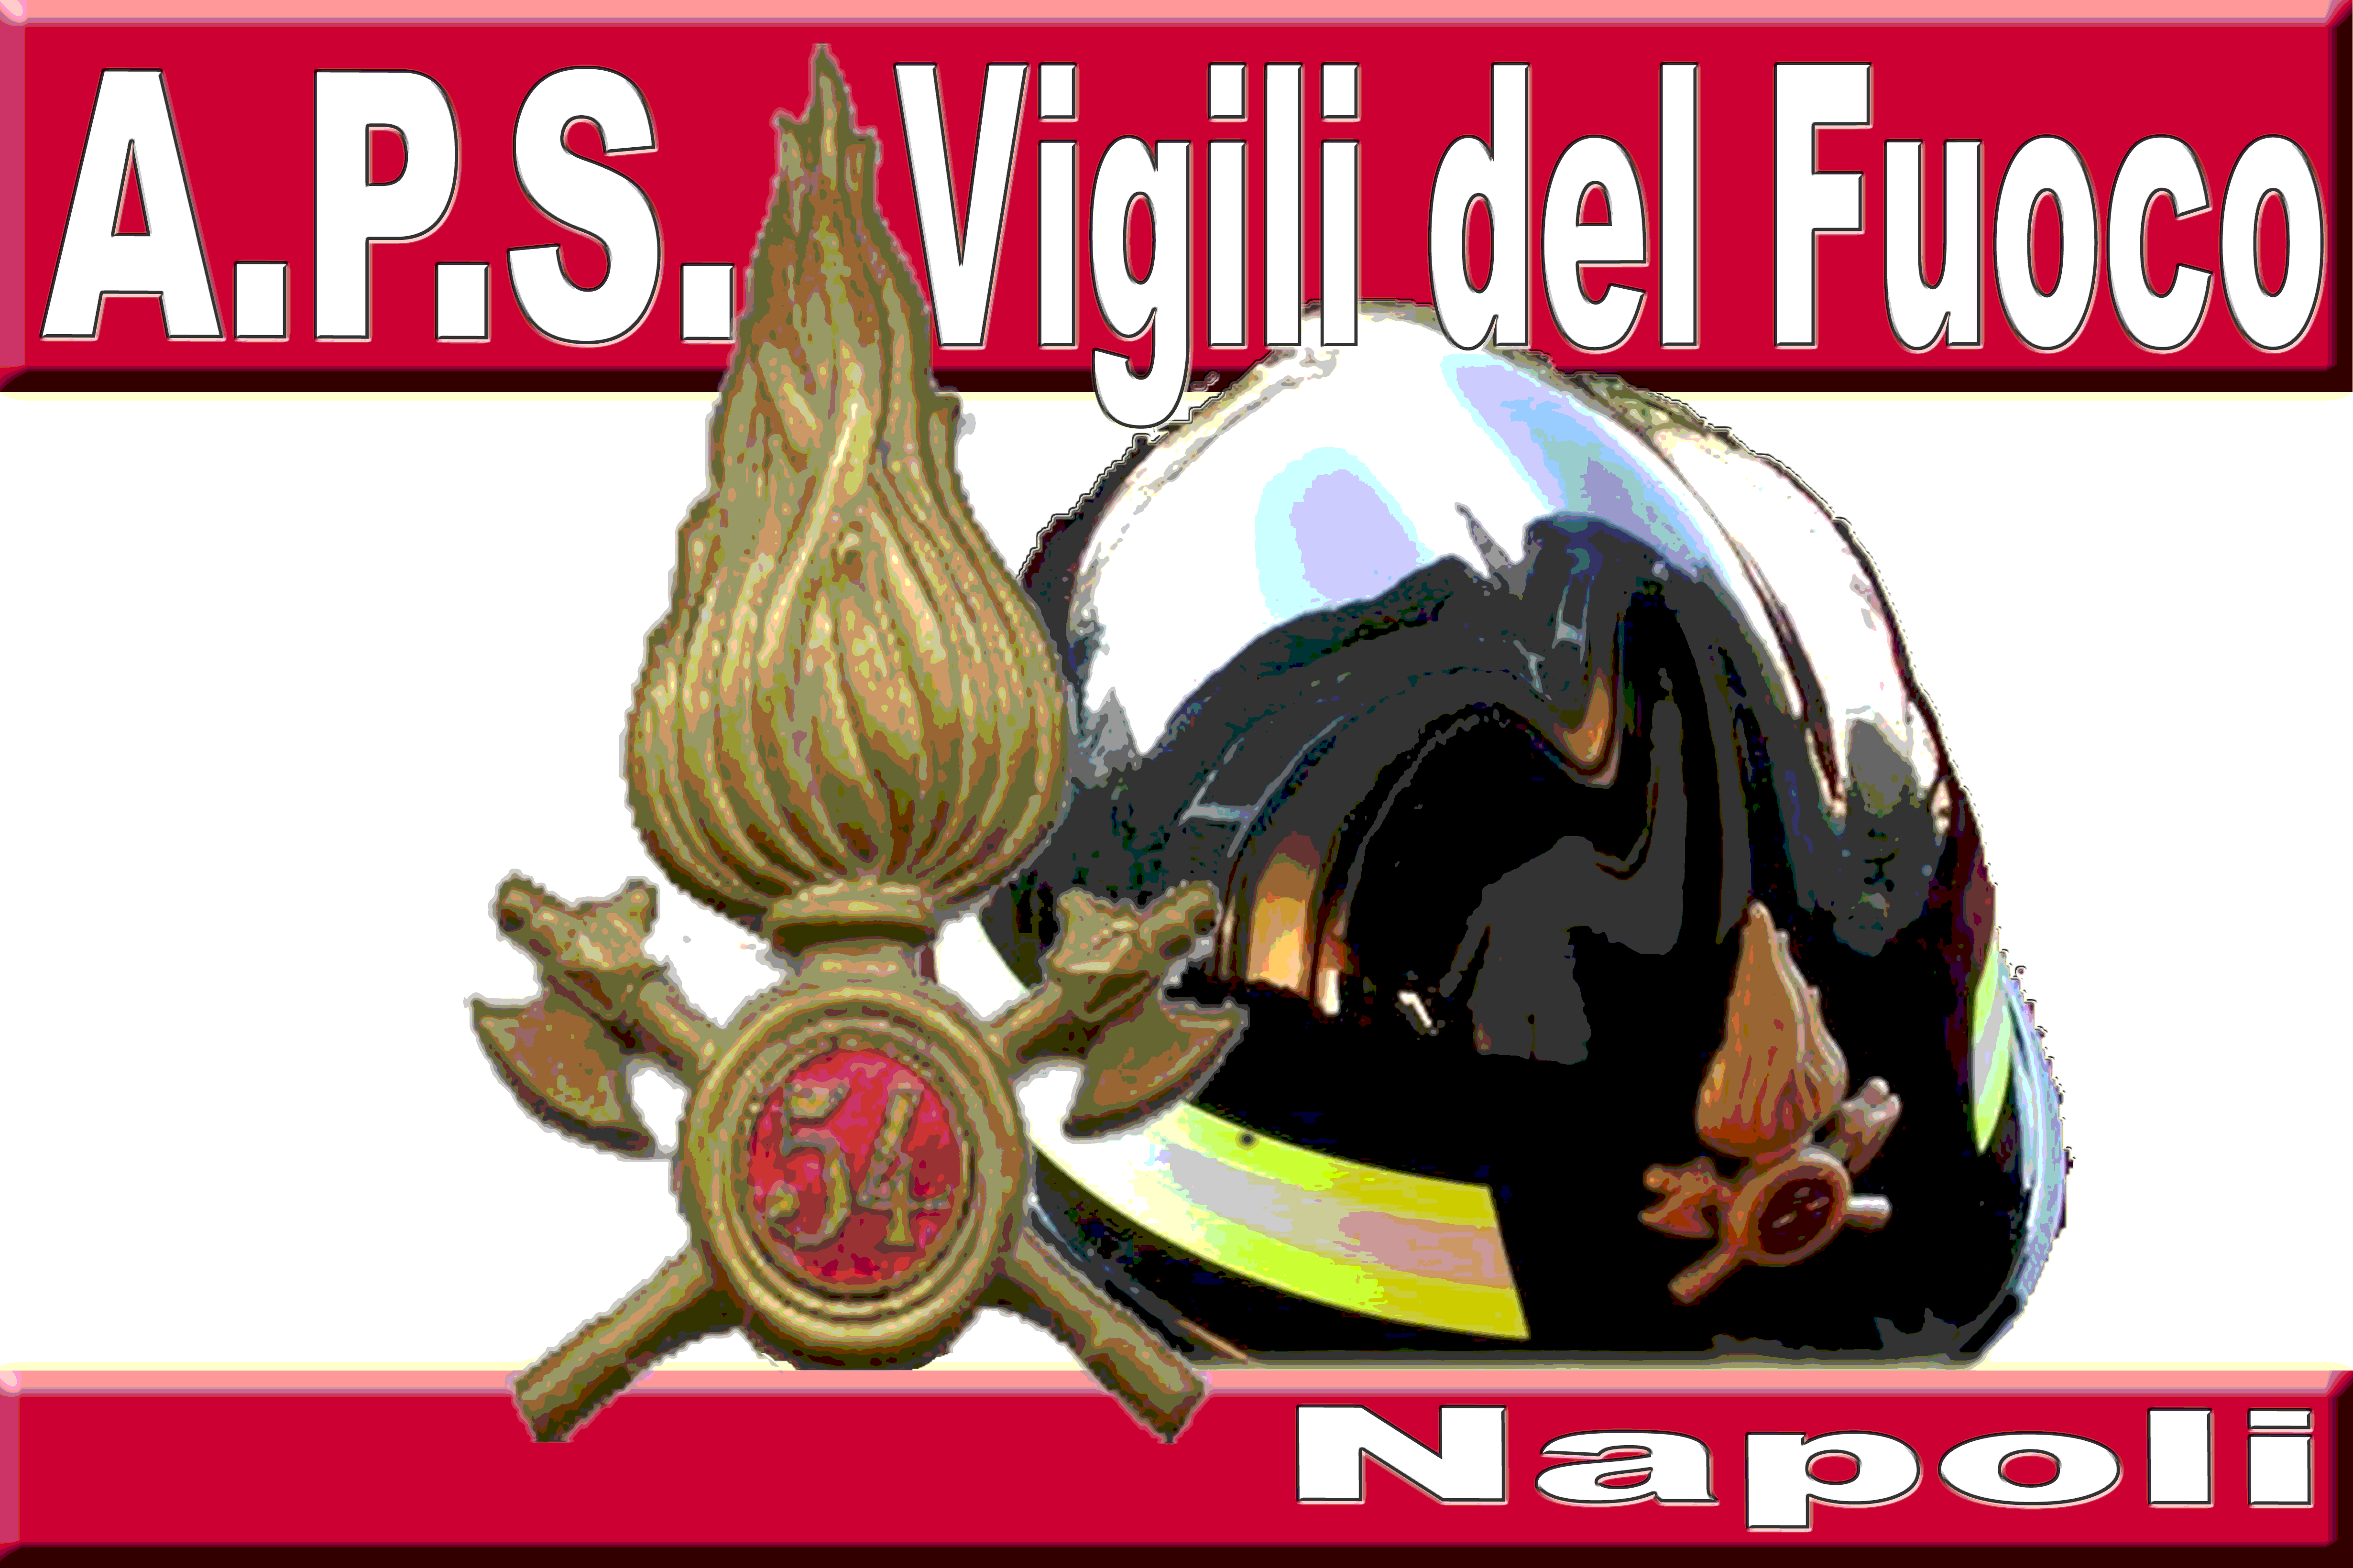 Associazione Vigili del Fuoco Napoli A.P.S.